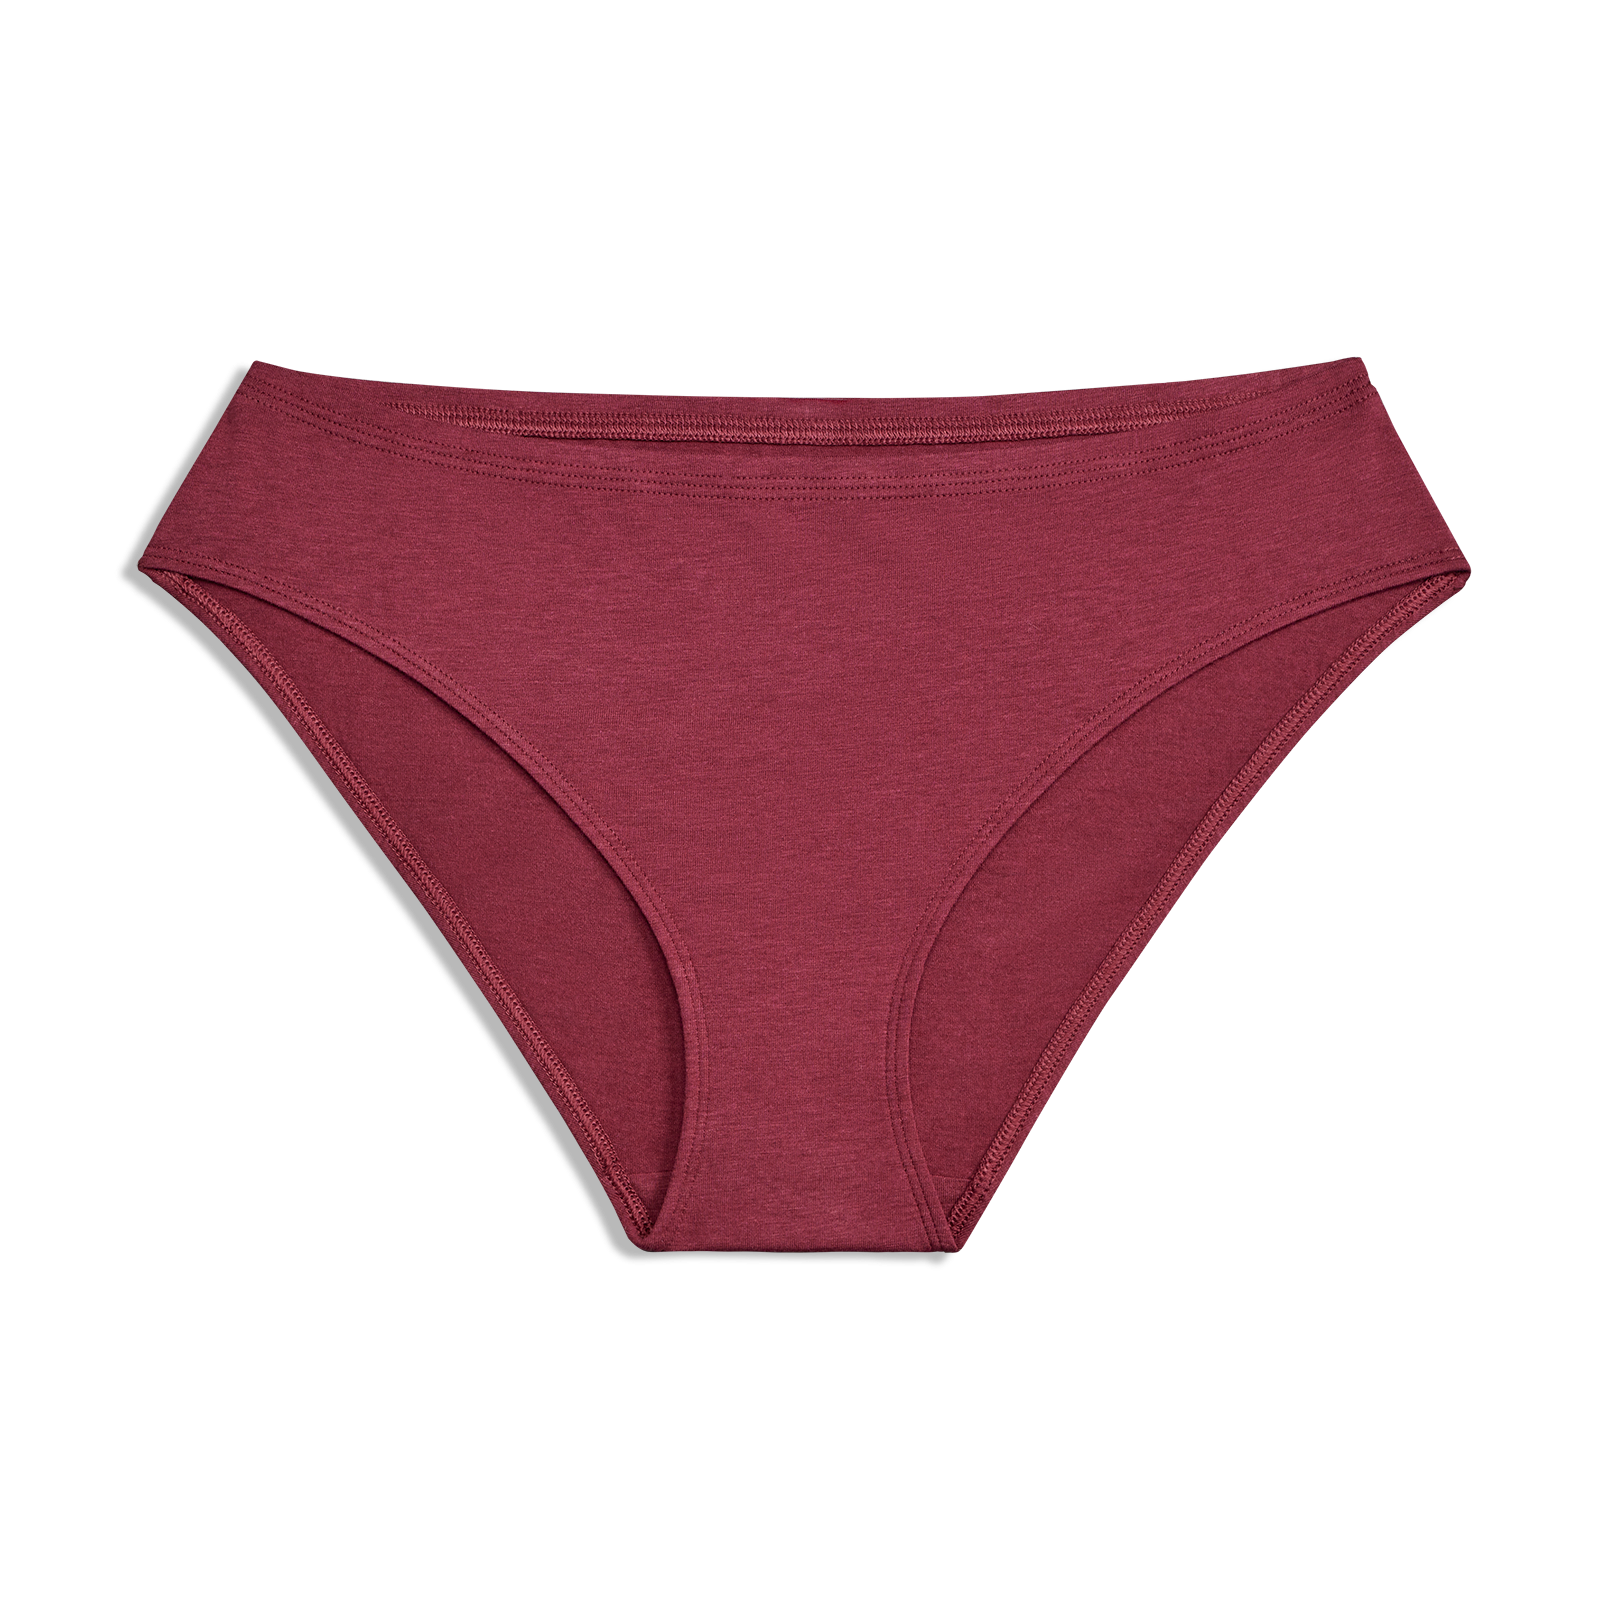 Buy Zivira Women's Micro Modal Panties Pack of 3 - Soft